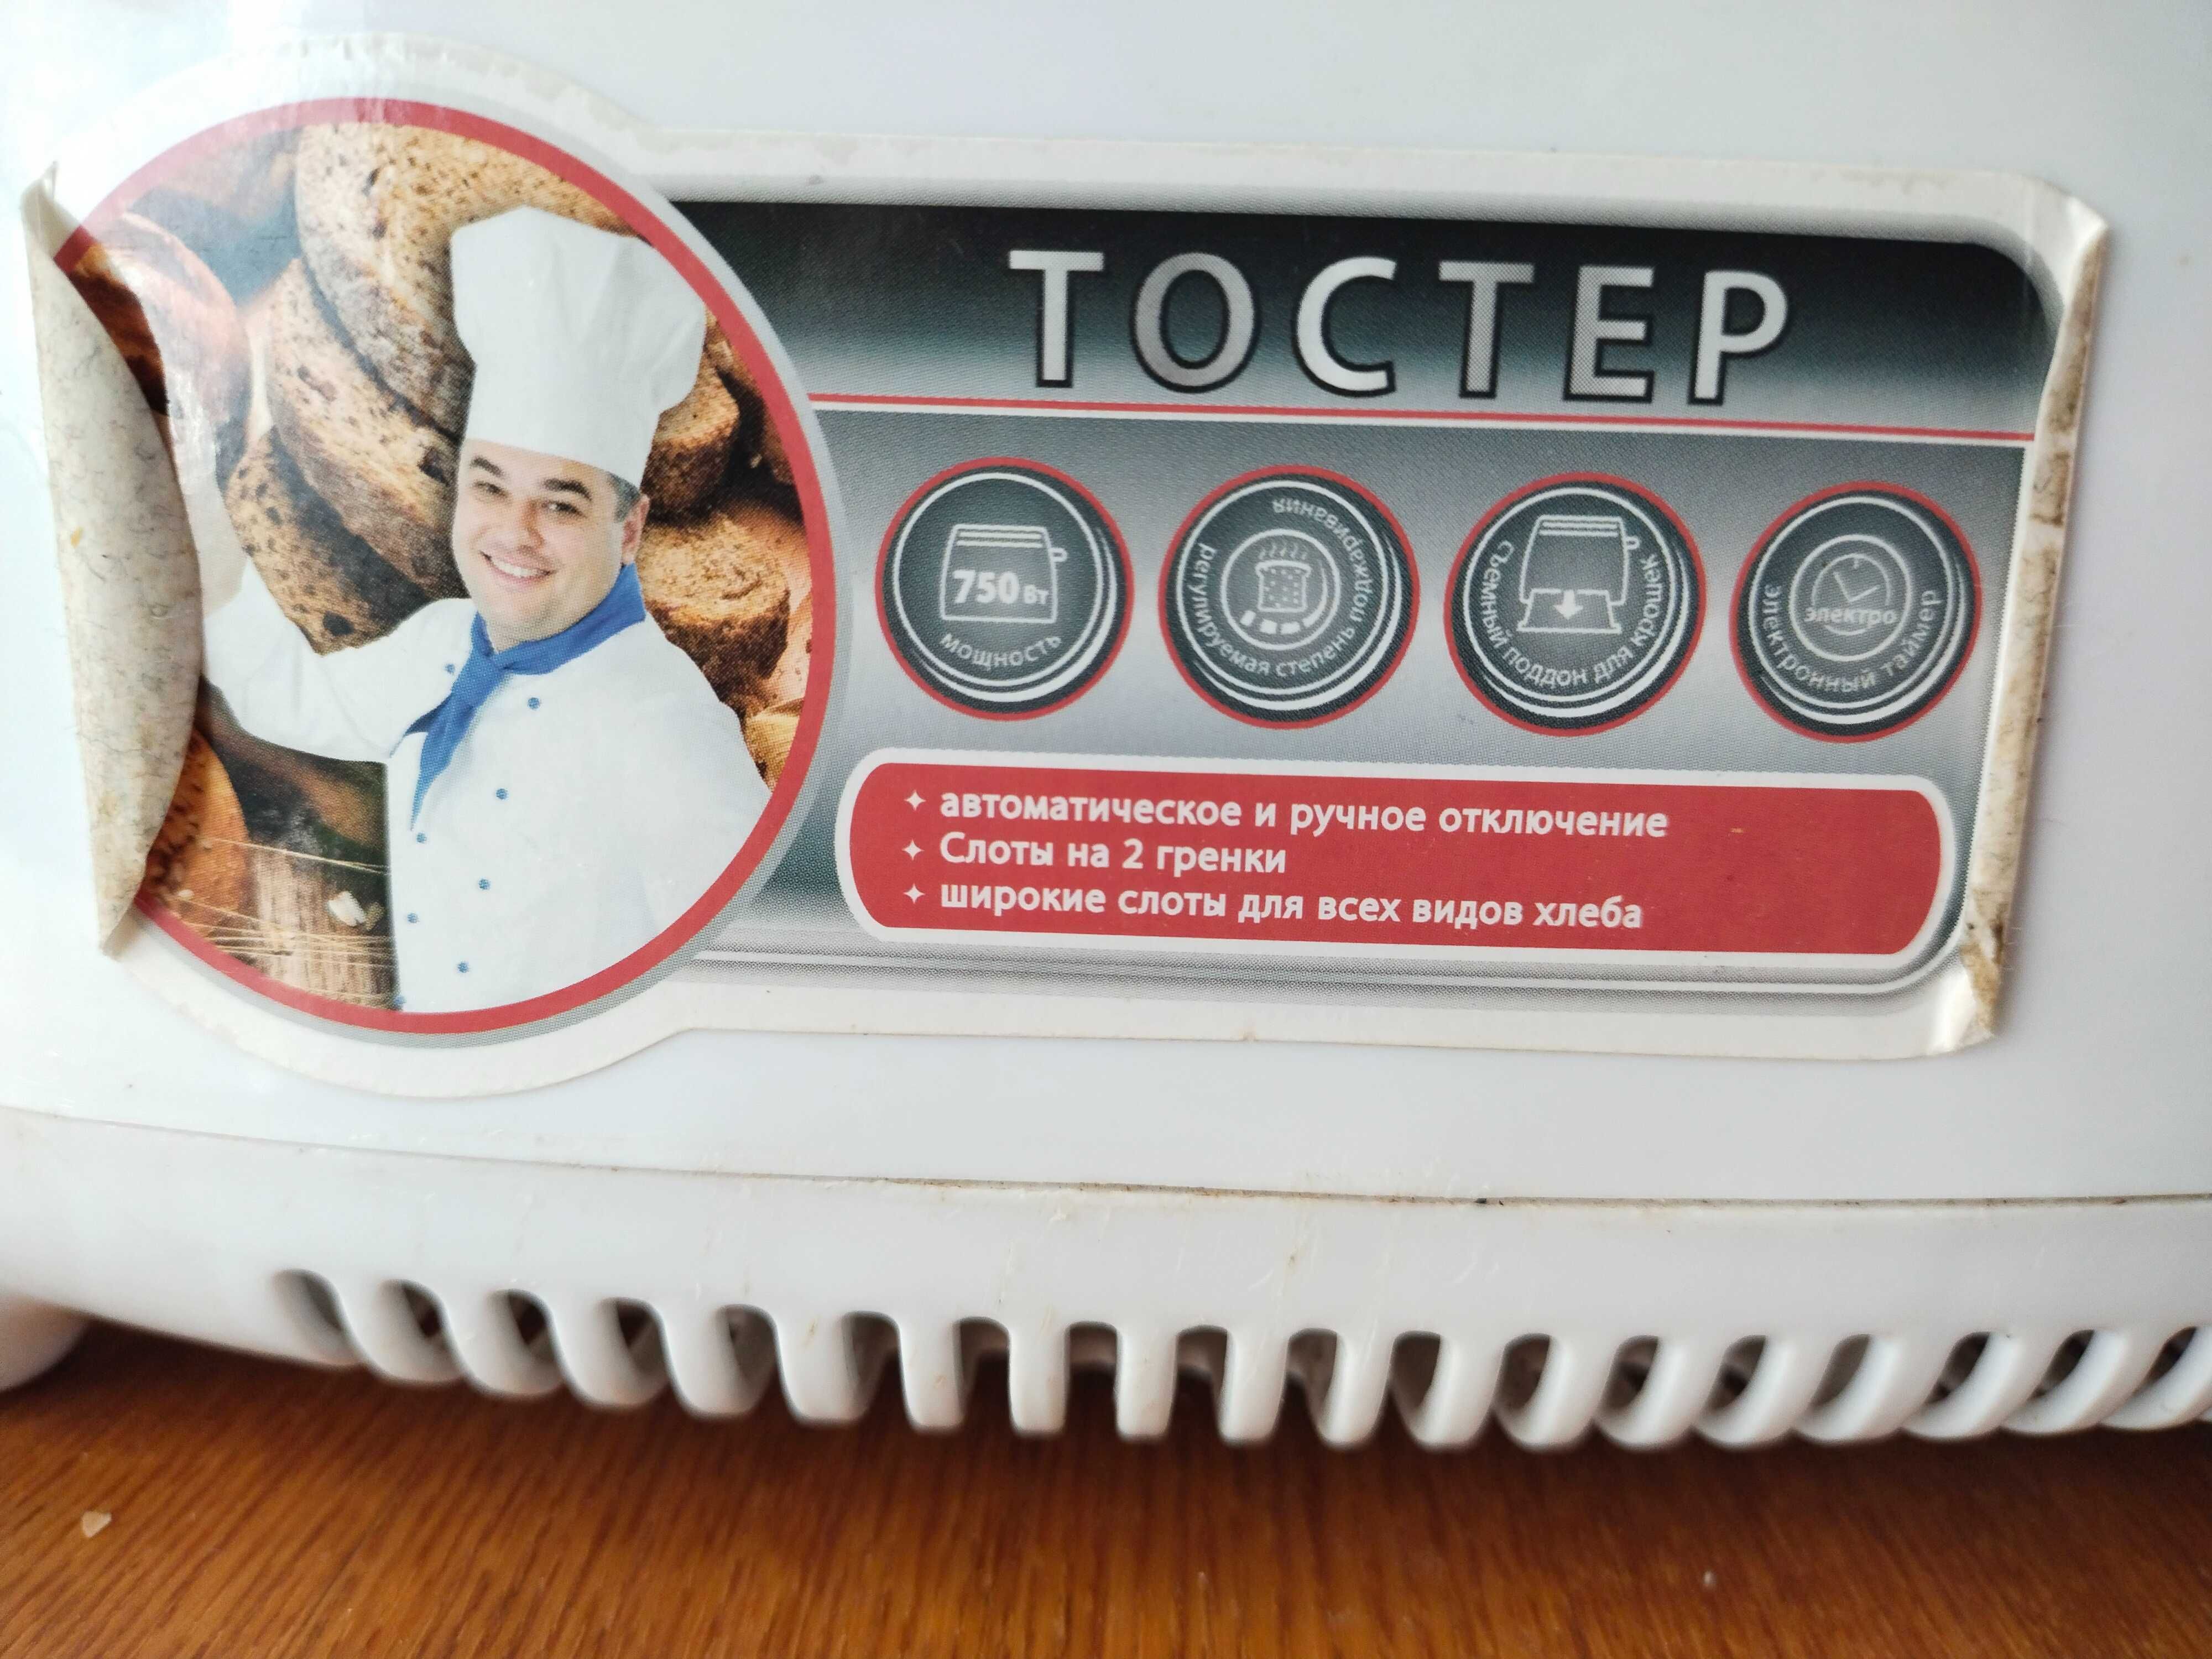 Продам тостер ST-EC1028 на 750 Вт